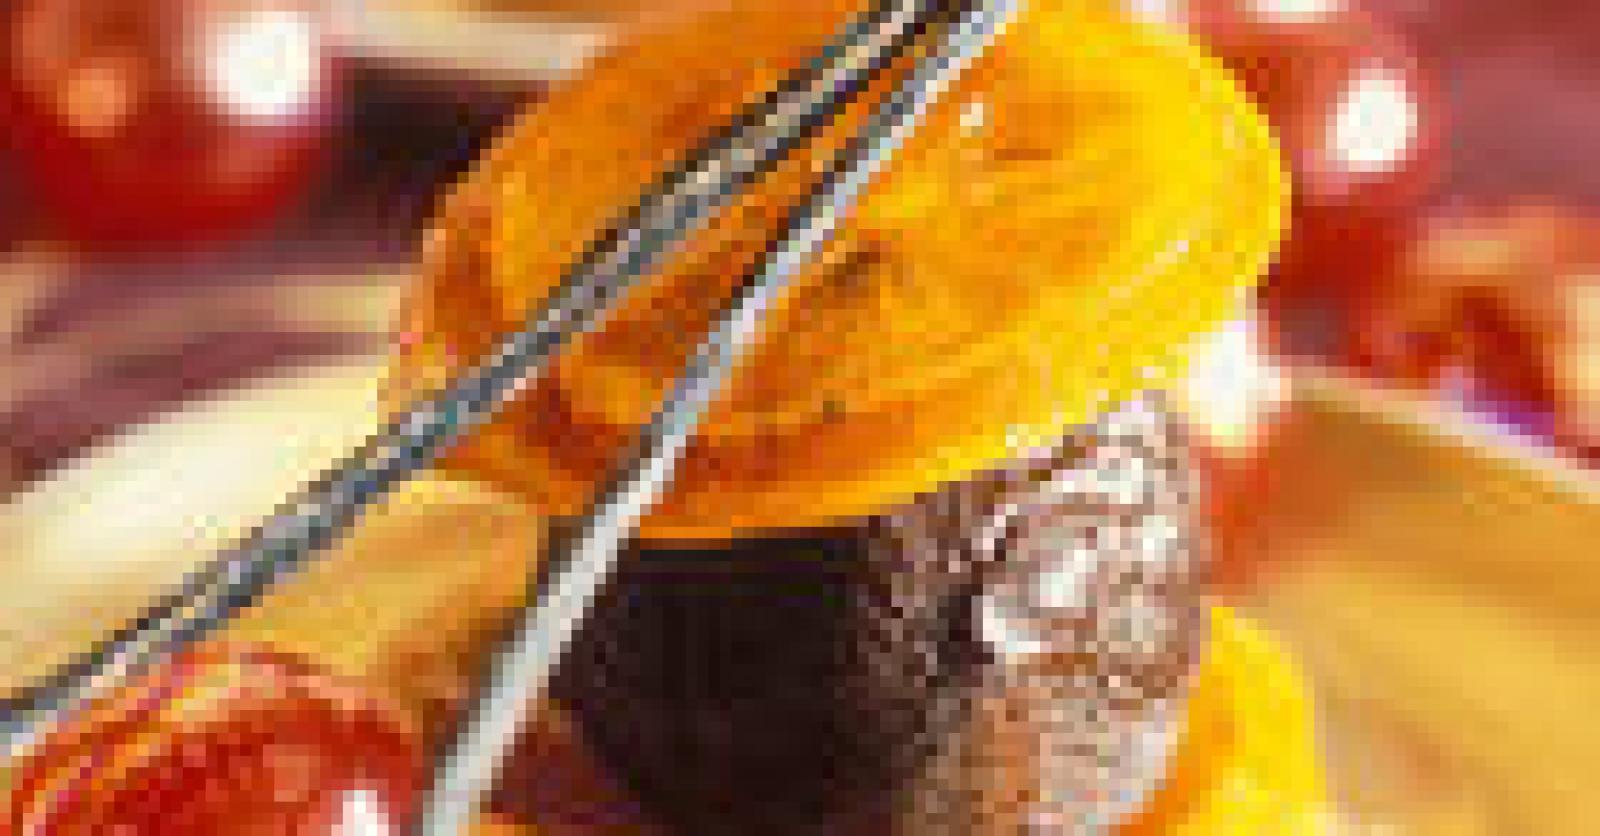 Les Oranges confites – Casserole & Chocolat